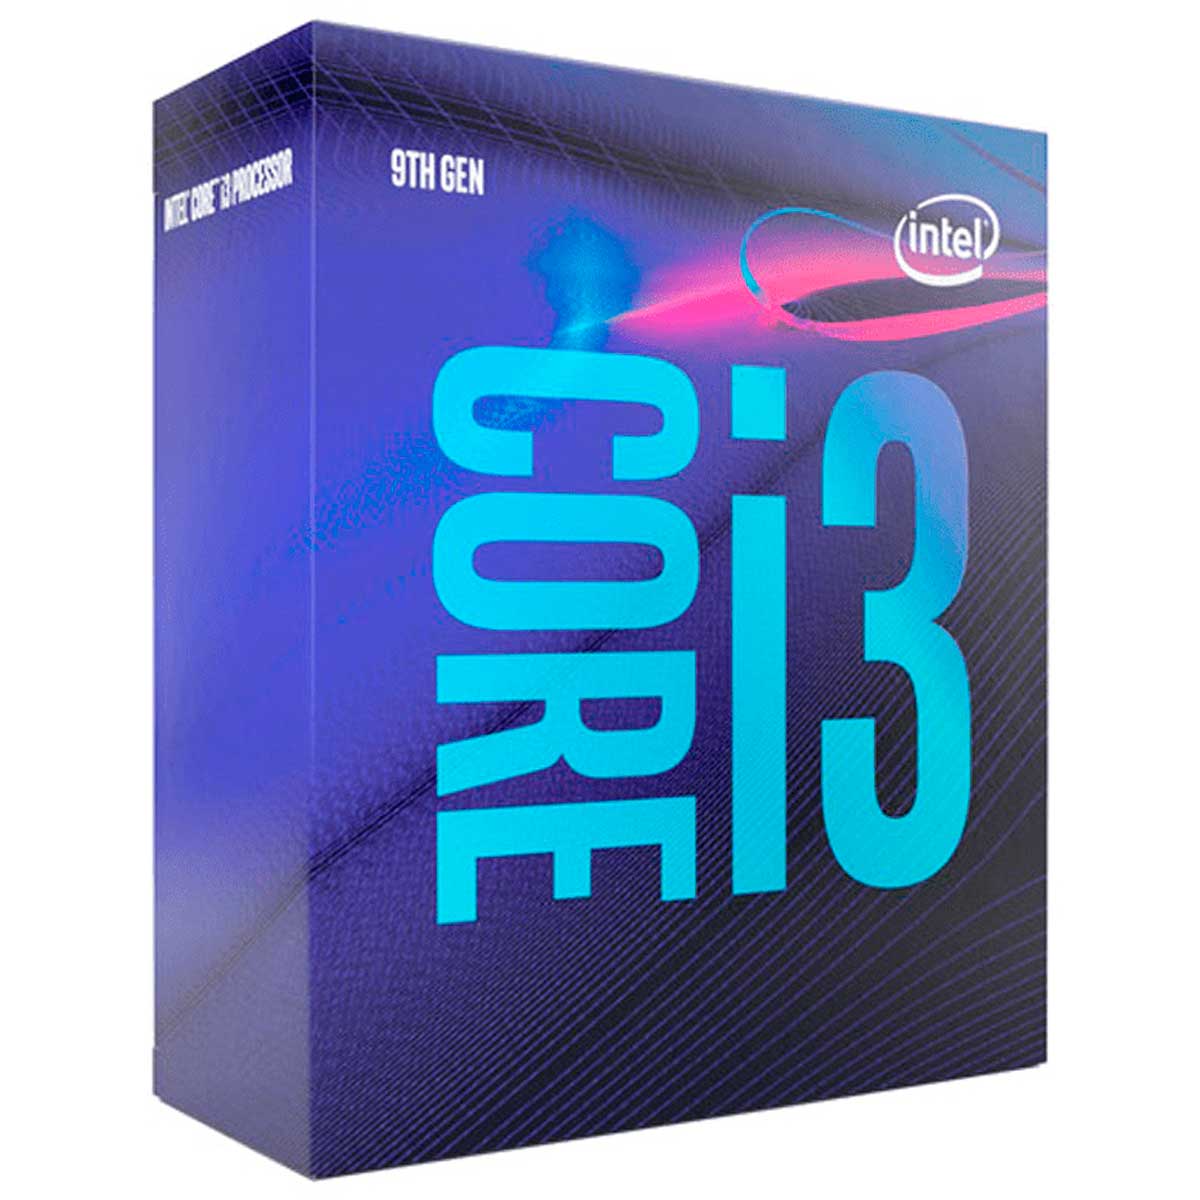 Intel® Core i3 9100 - LGA 1151 - 3.6GHz (Turbo 4.2GHz) - Cache 6MB - 9ª Geração - BX80684I39100